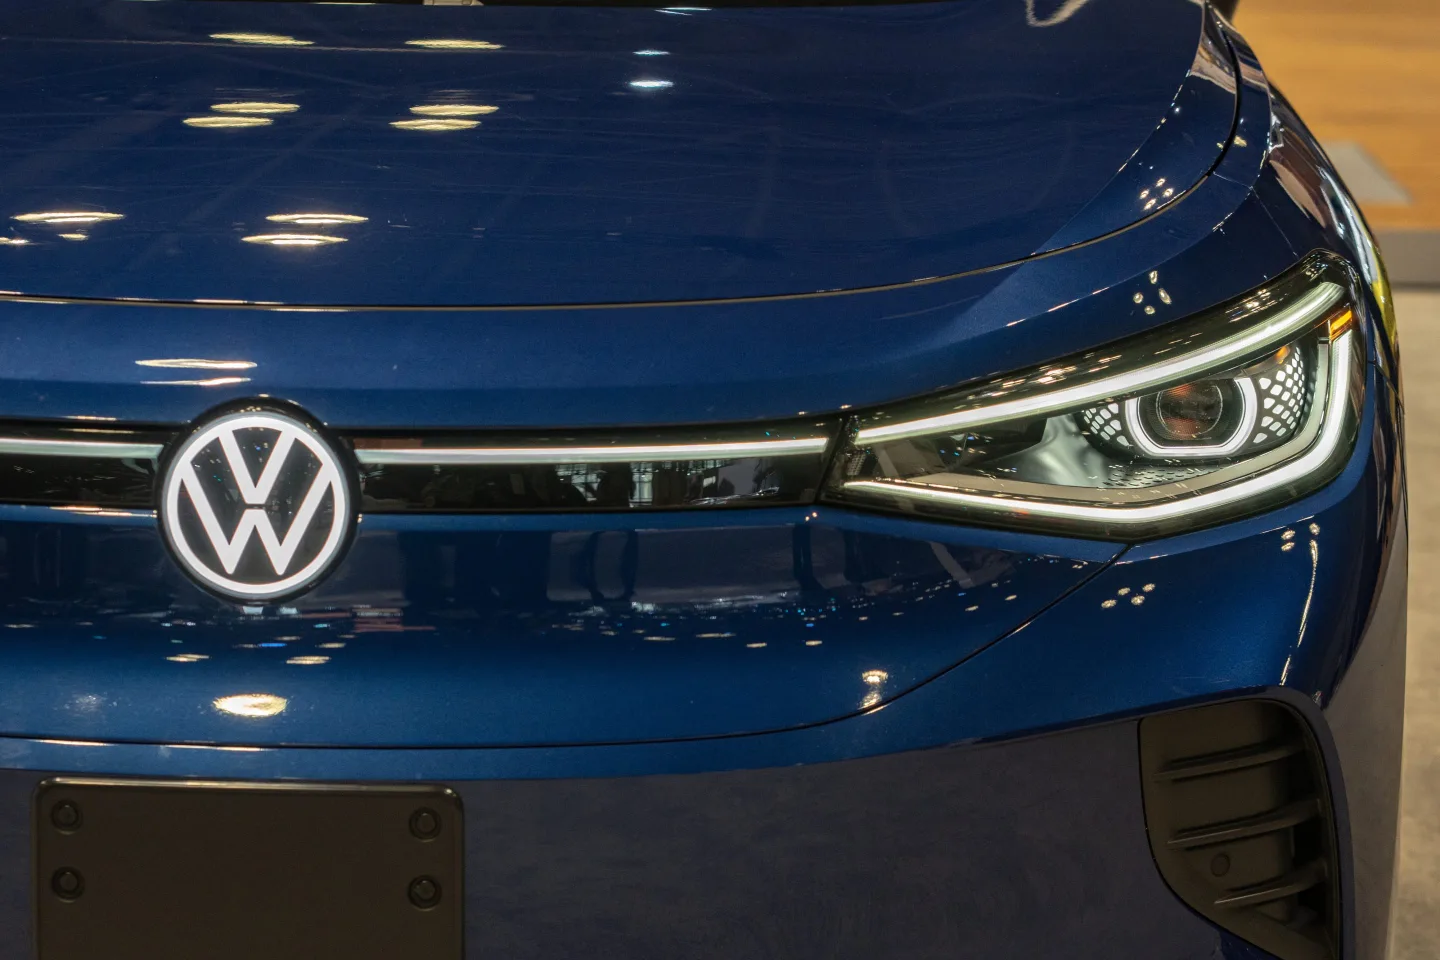 Hãng Volkswagen từ chối hỗ trợ điều tra… với lí do gói dùng thử Car-Net của chiếc xe đó đã hết hạn. Ảnh: Getty